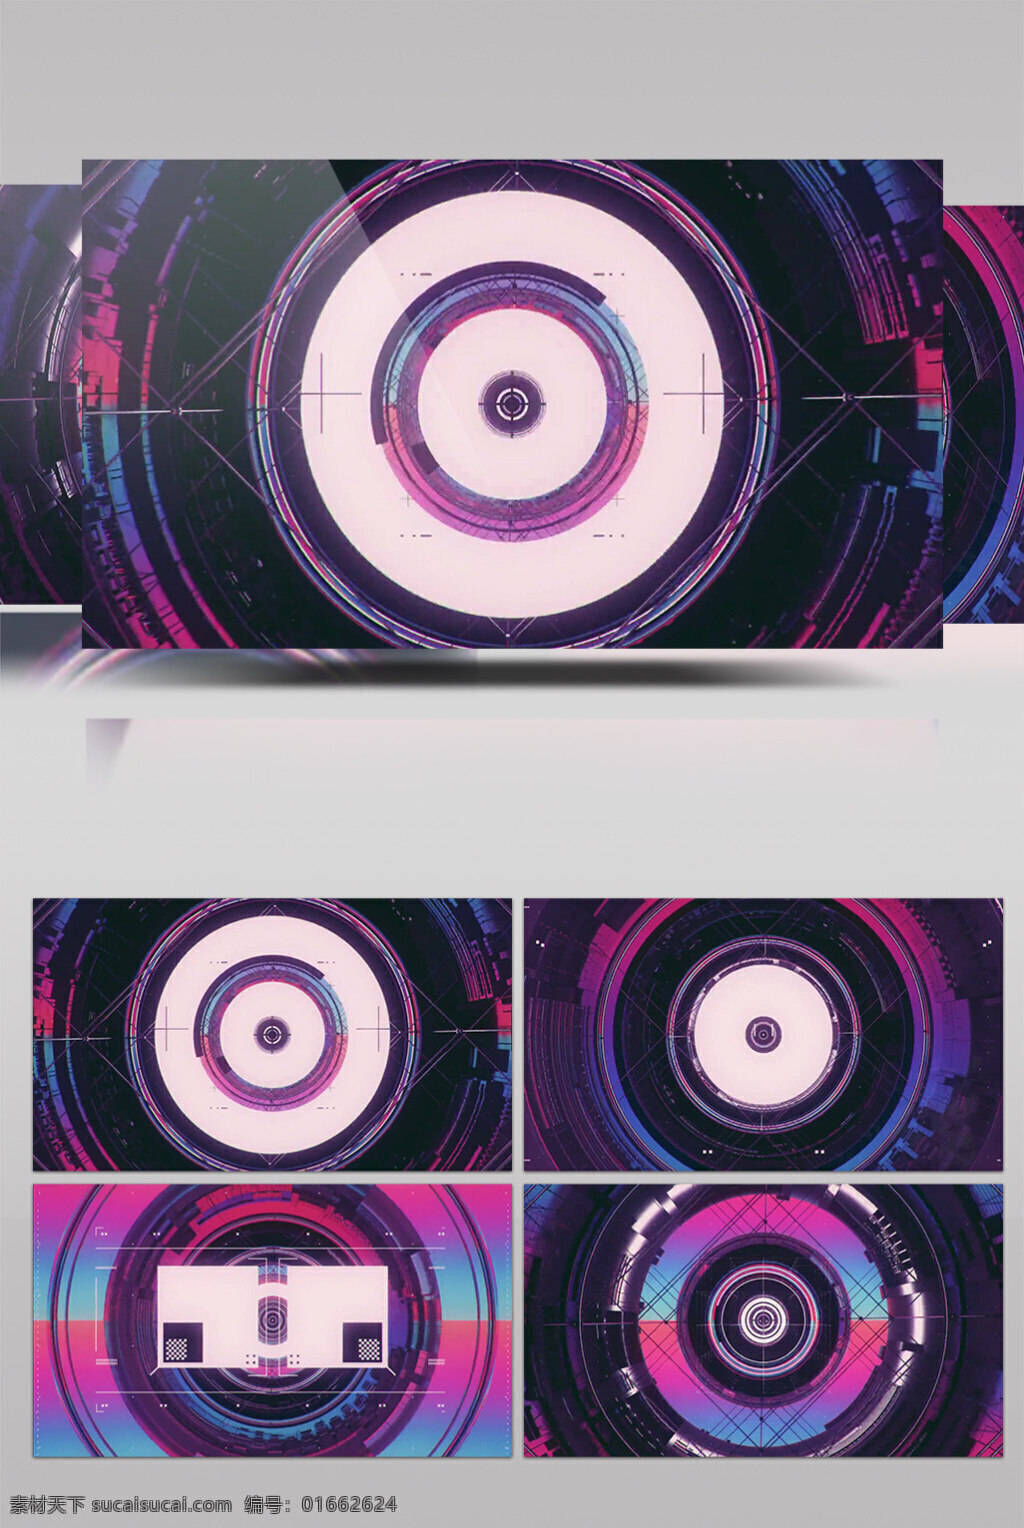 个性 cd 碟 动态 视频 个性cd碟 射 光衍射 炫酷光华 进场光 转场背景 炫酷视频素材